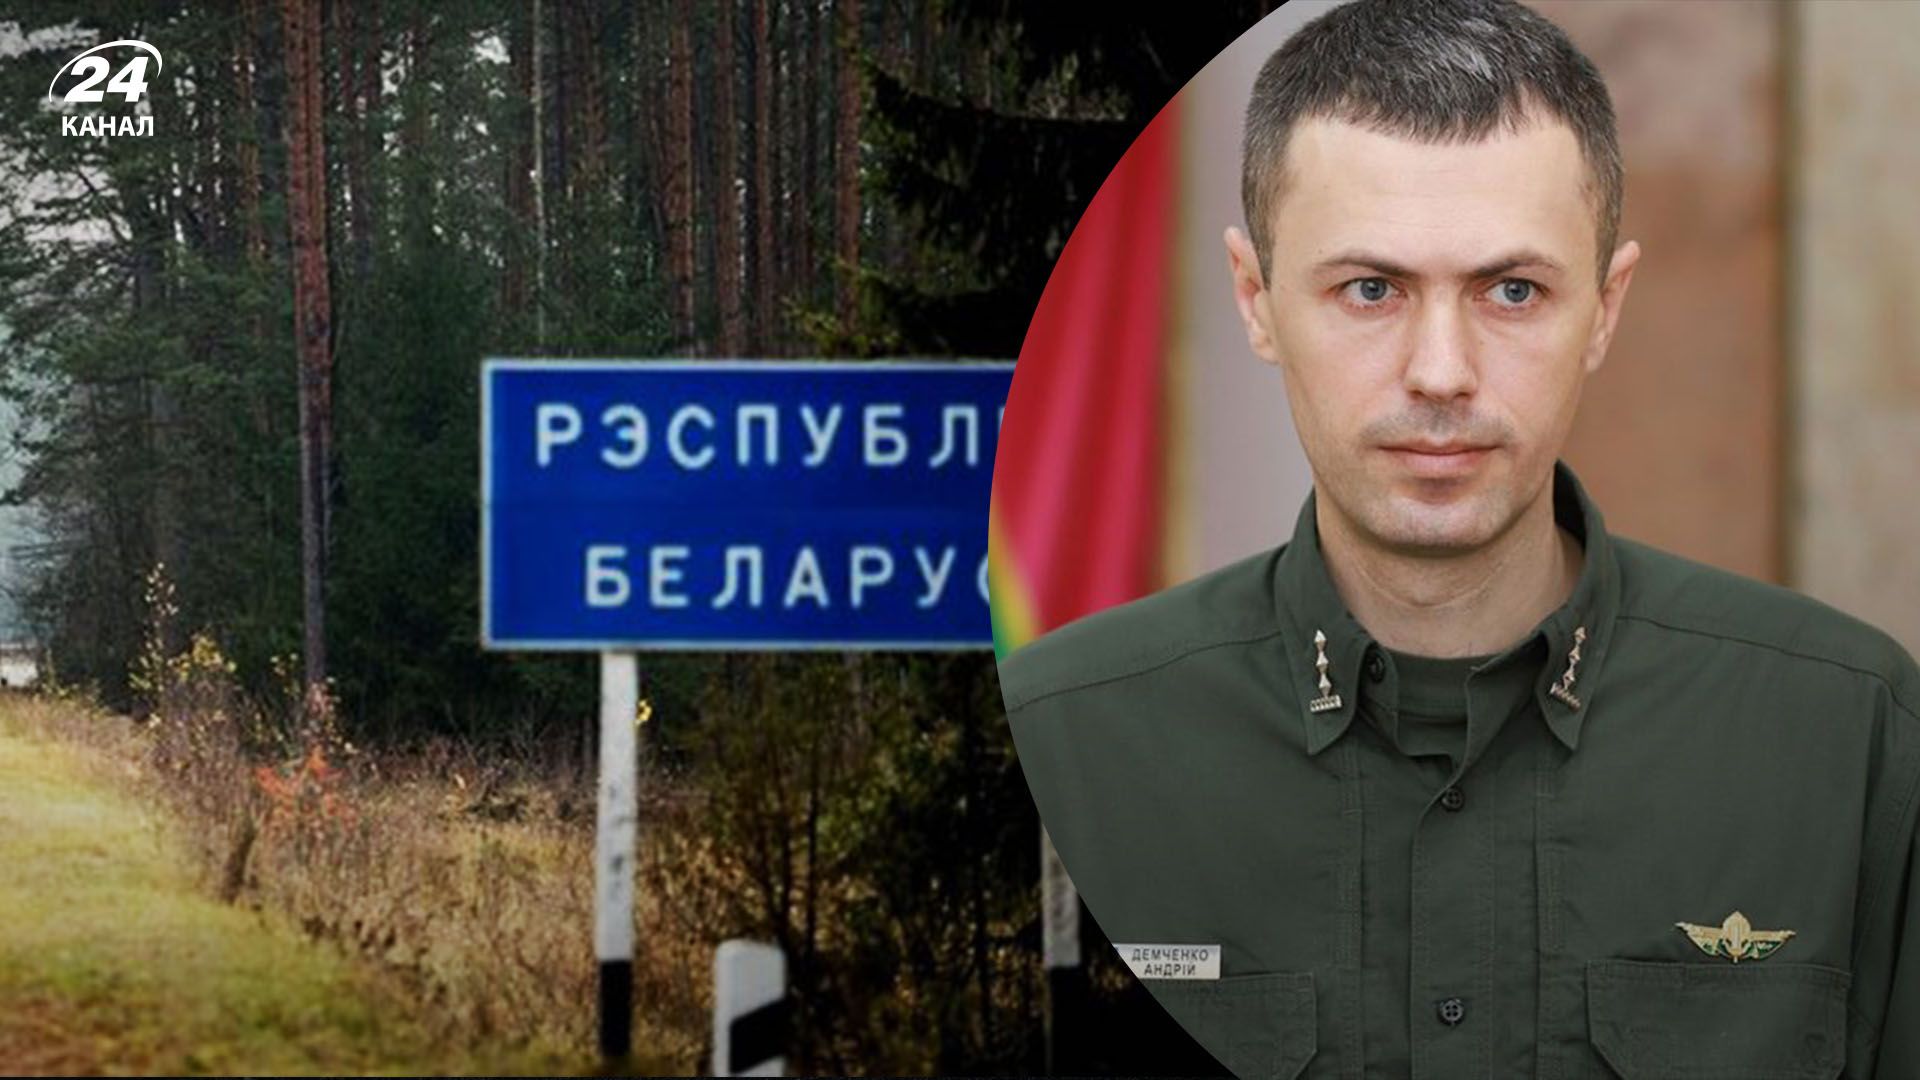 Какова ситуация на границе с Беларусью